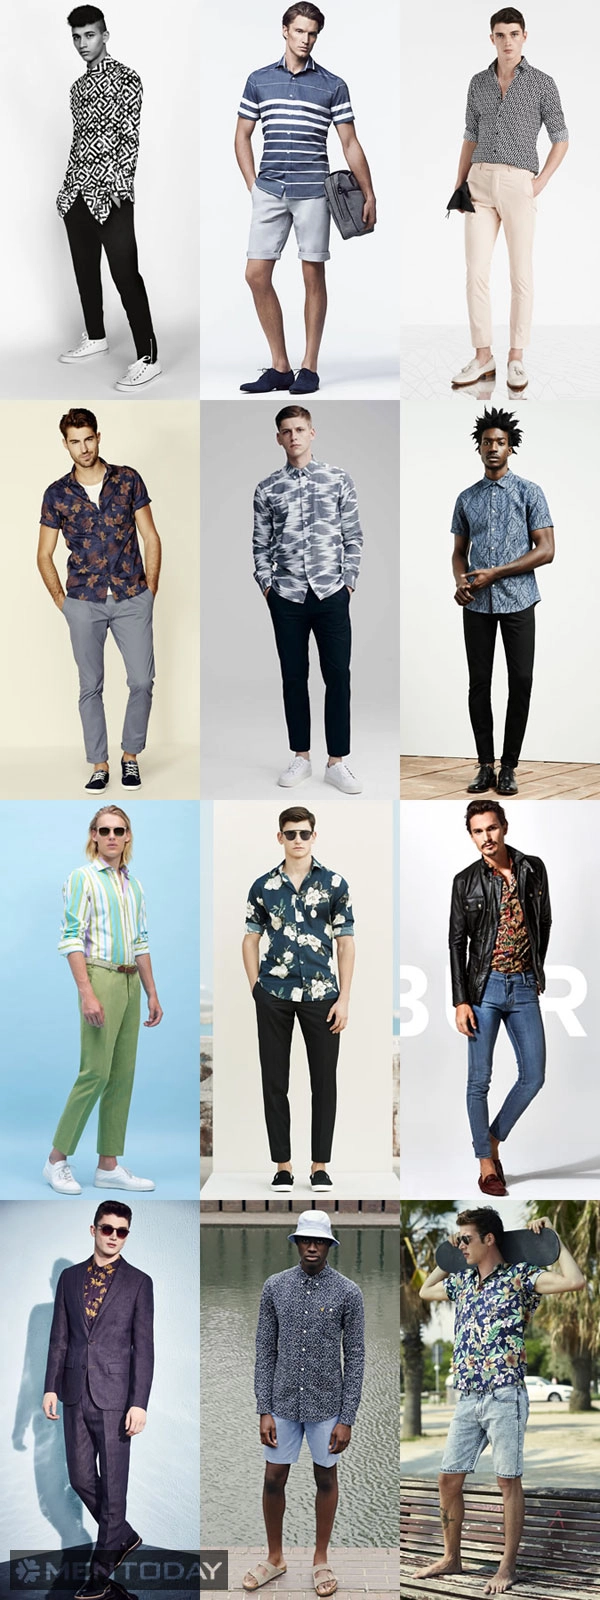 4 items chính trong xu hướng thời trang hè 2015 - 2